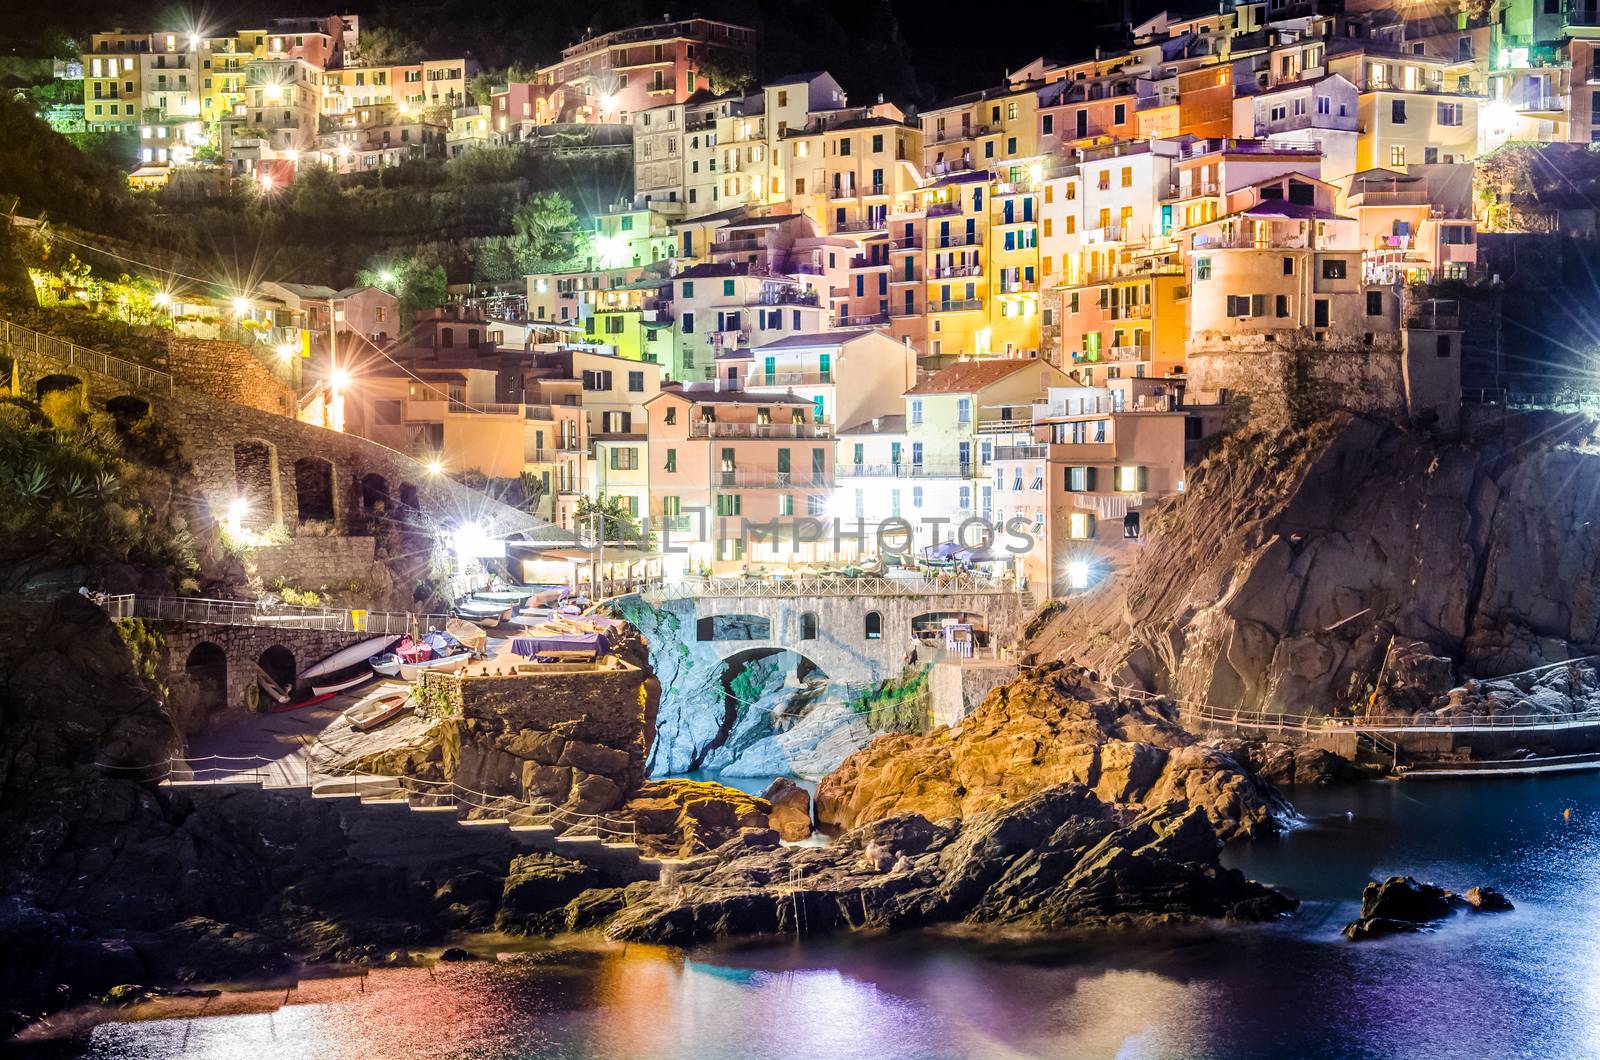 Night view of colorful village Manarola in Cinque Terre by martinm303